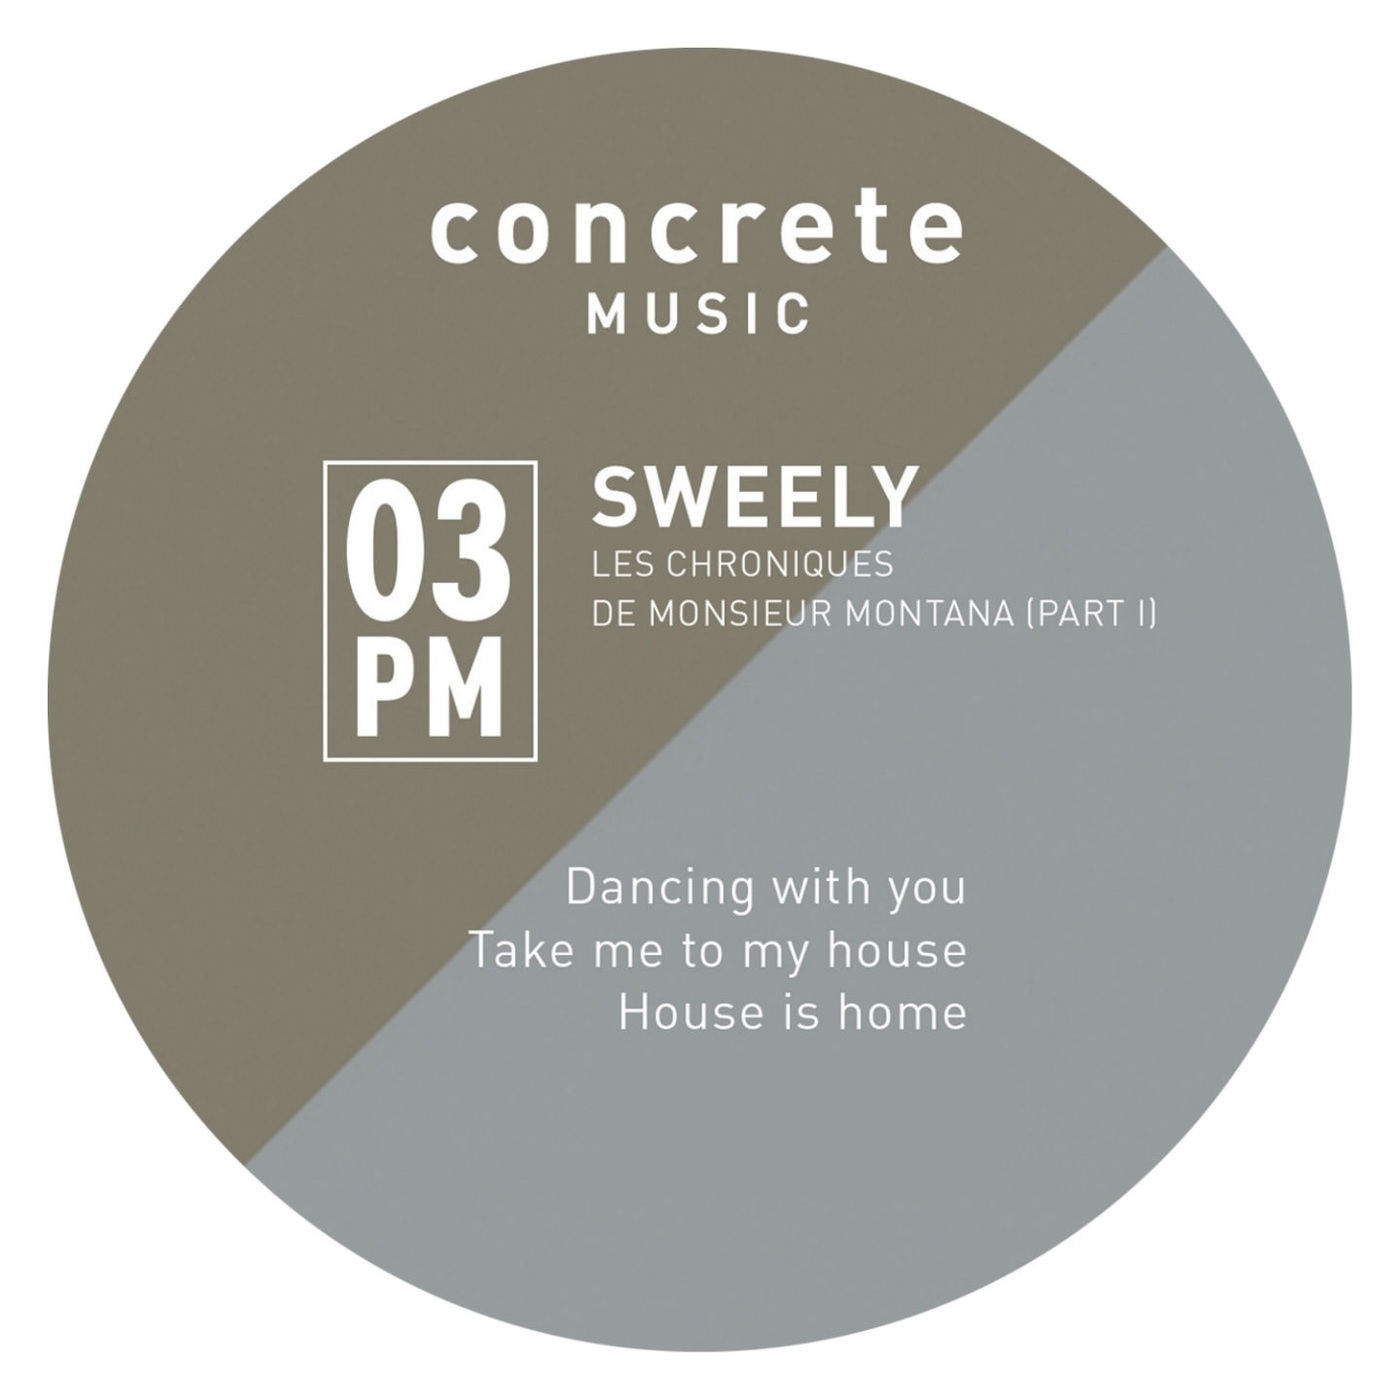 Sweely - Les chroniques de monsieur Montana, pt. 1 / Concrete Music 3PM